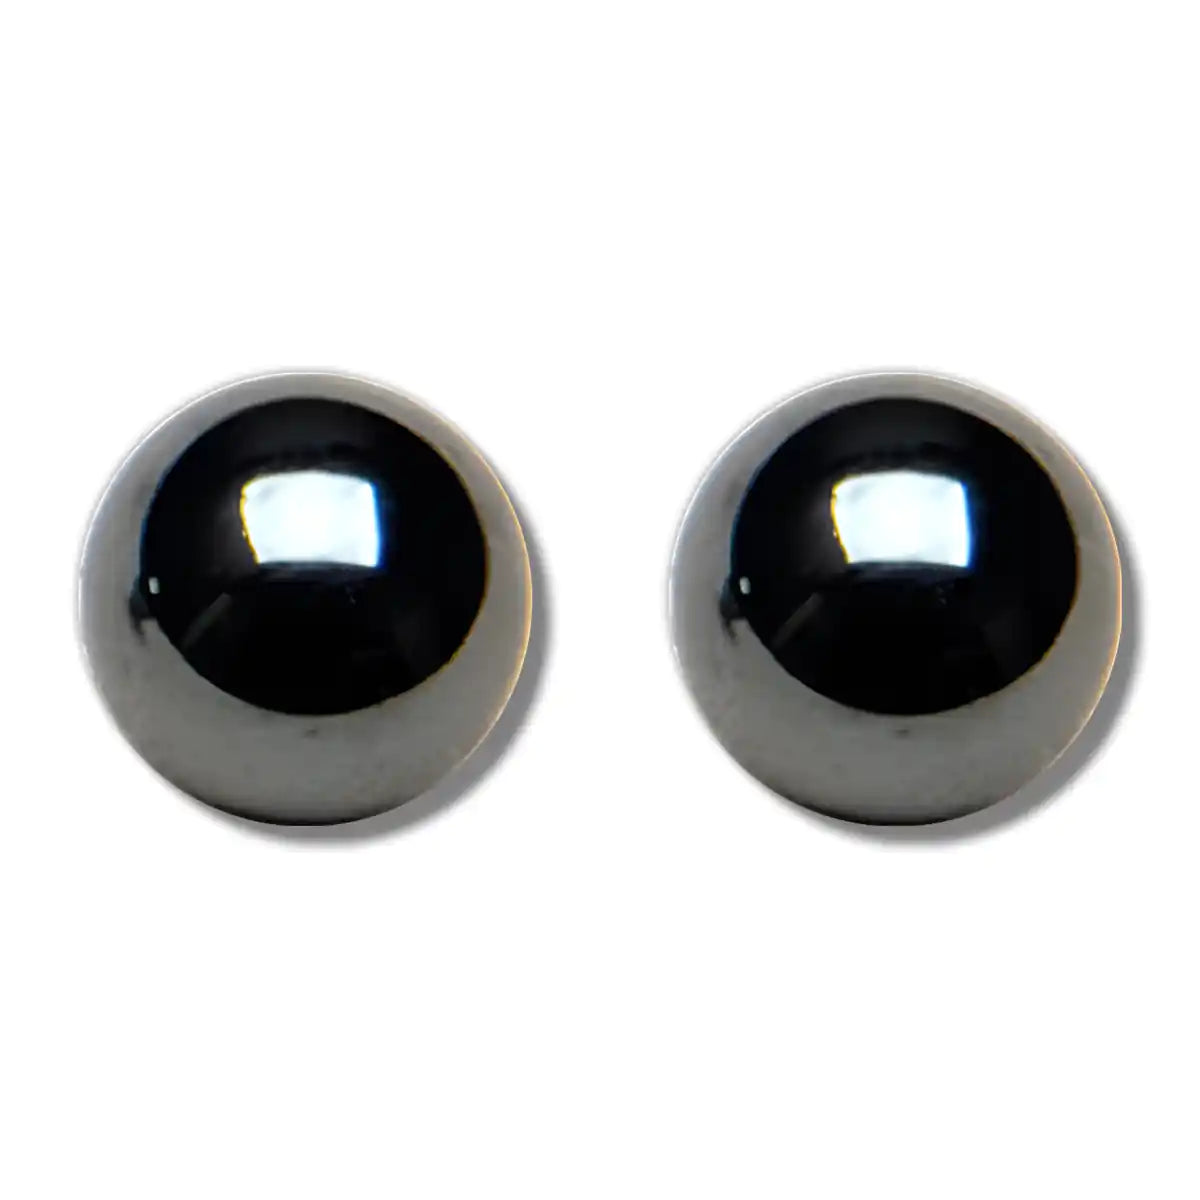 Hematite ball-6mm earrings